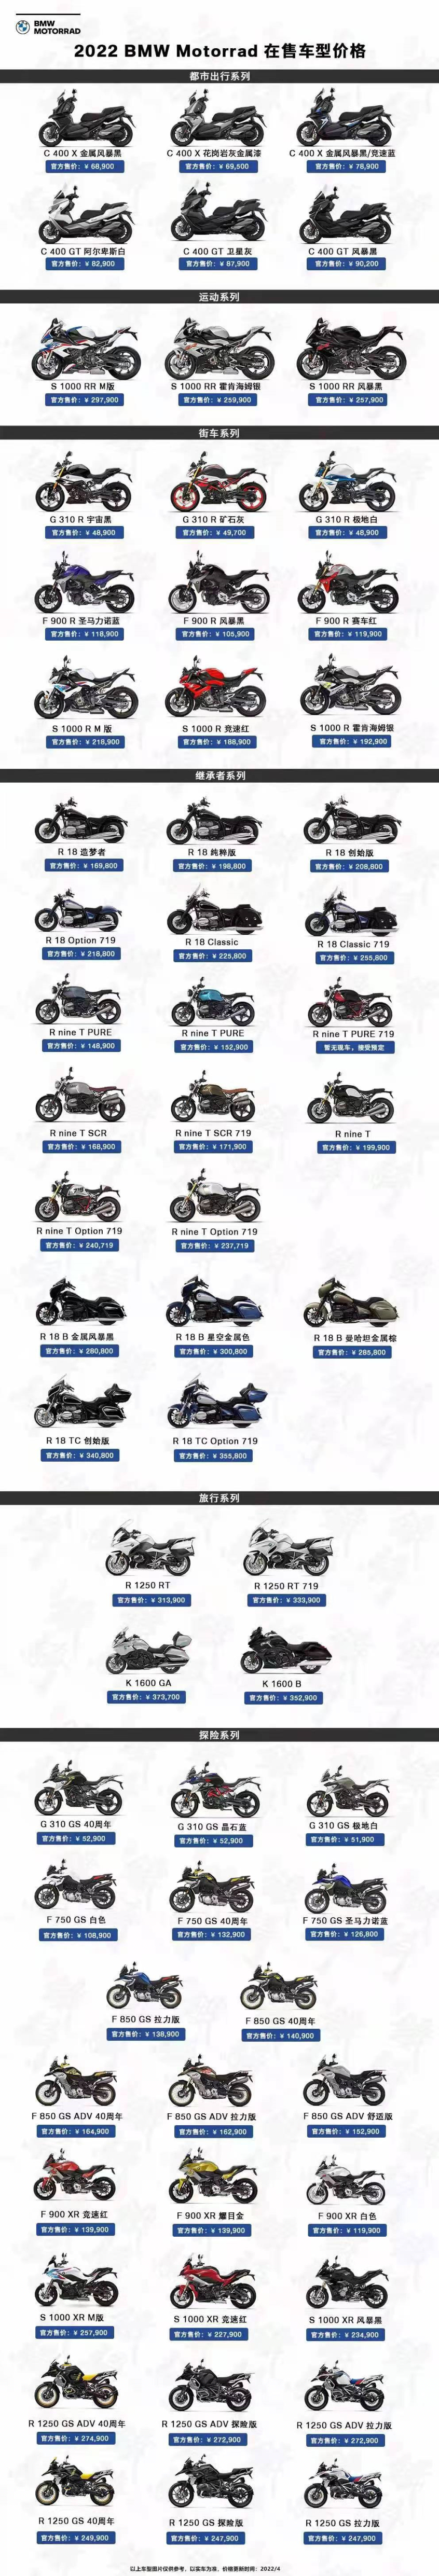 纳米体育宝马摩托车价格调整 GS系列涨价超万元(图1)